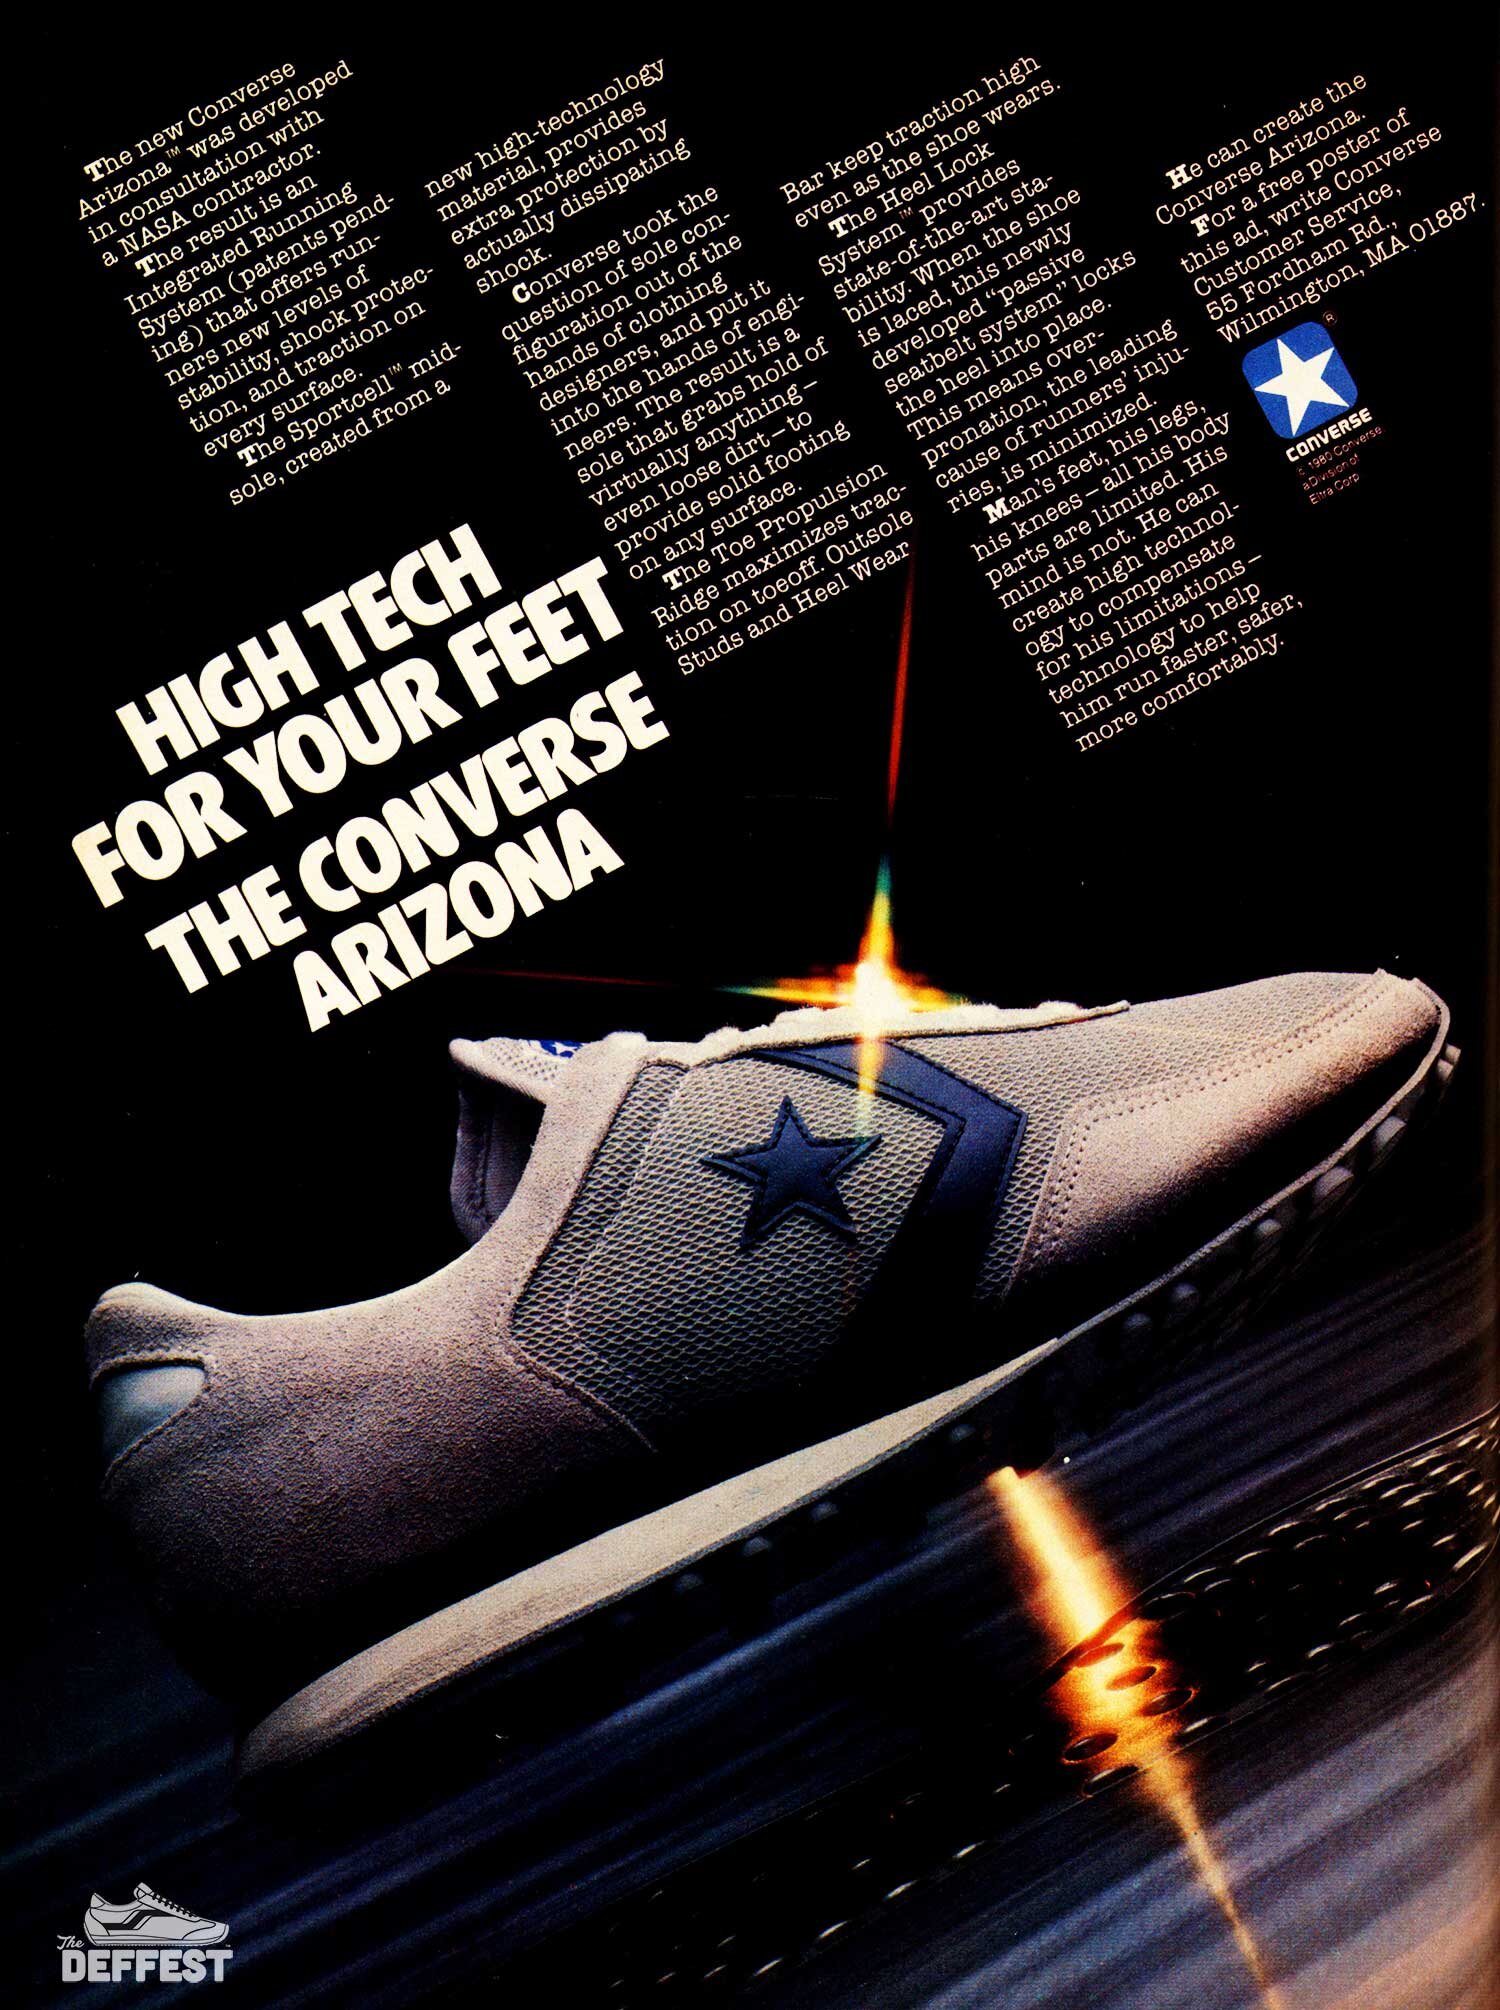 tellen kolonie Nauwkeurig The Deffest®. A vintage and retro sneaker blog. — Converse Arizona 1980  vintage sneaker ad